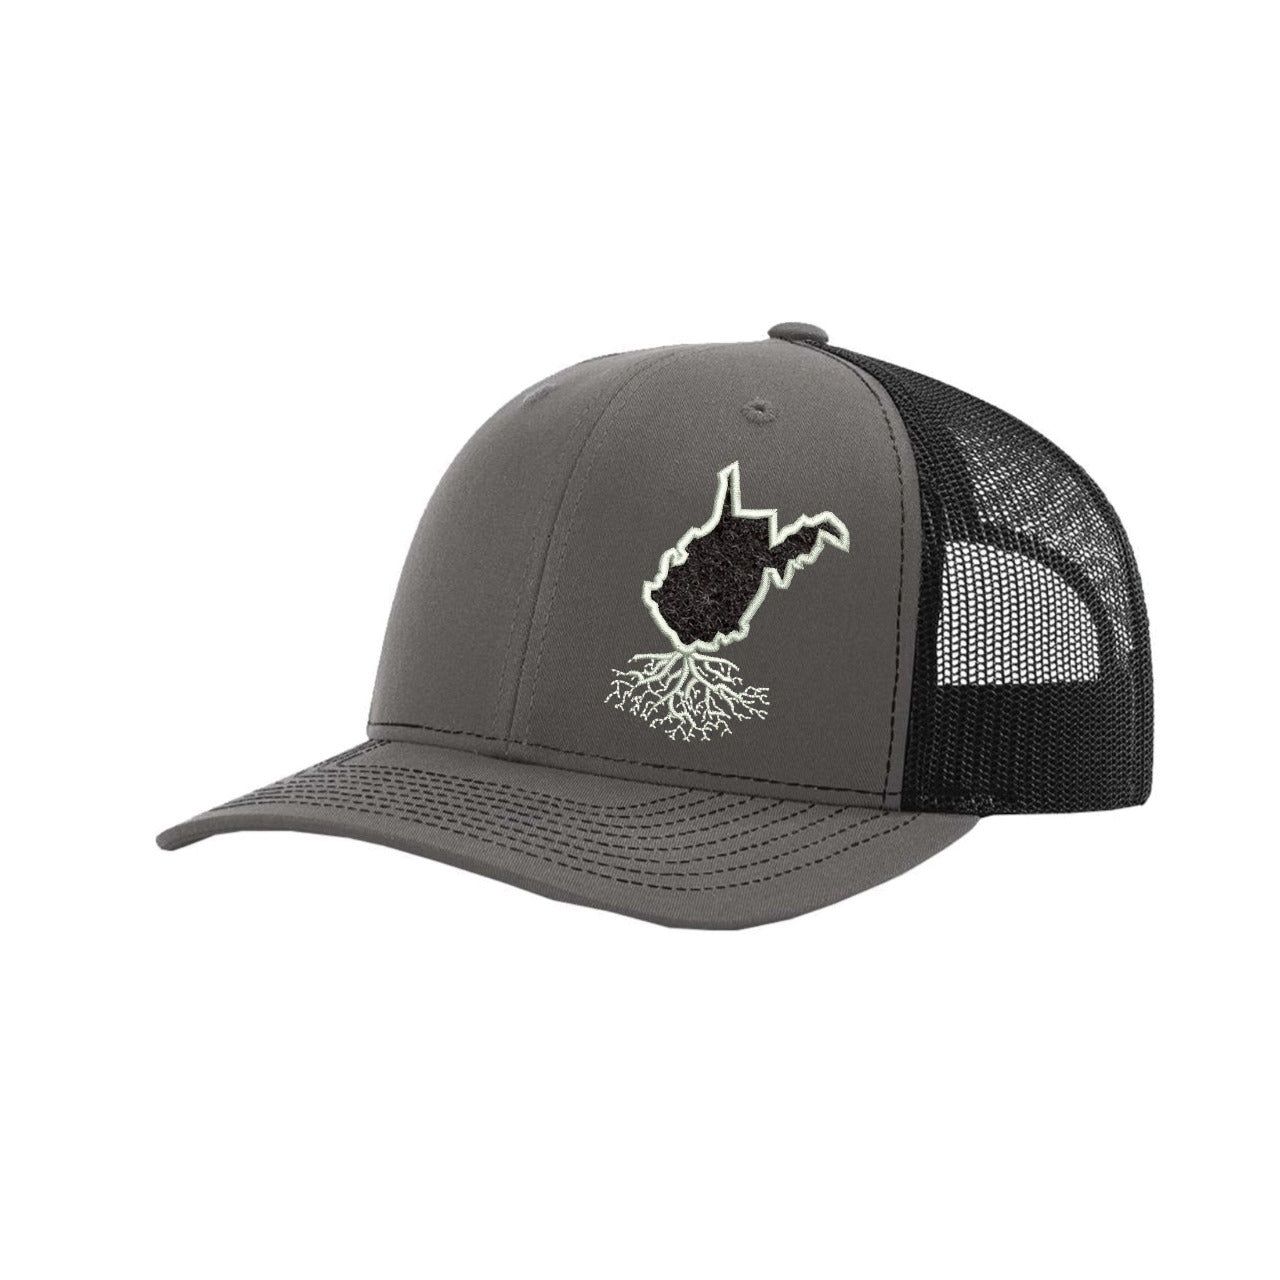 West Virginia Hook & Loop Trucker Cap - Hats